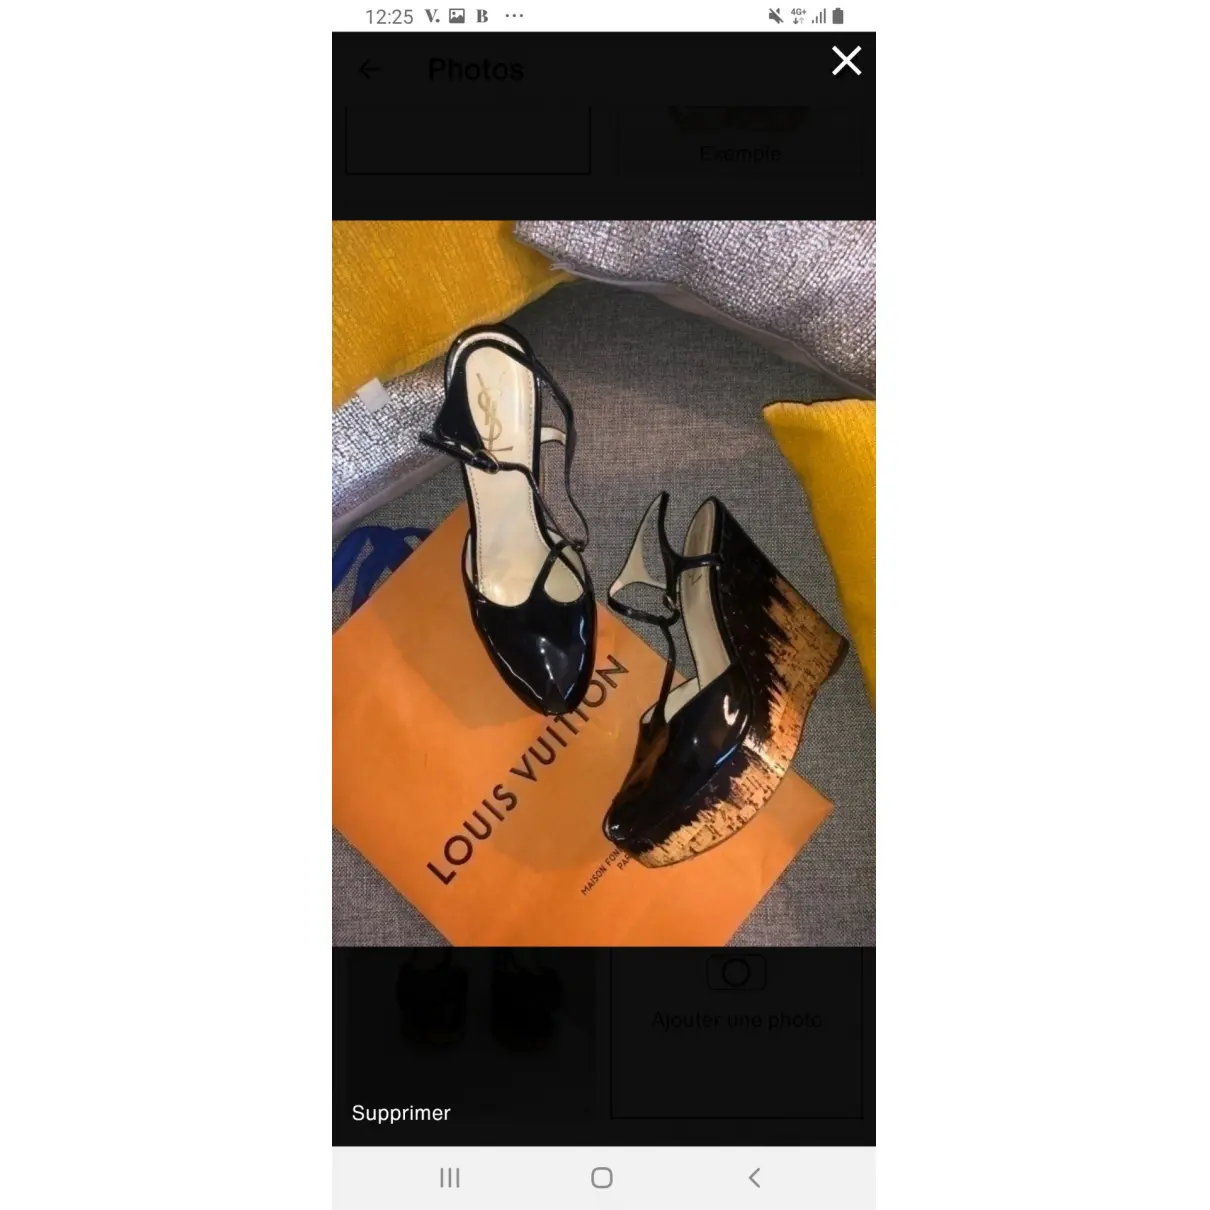 Patent leather sandals Yves Saint Laurent